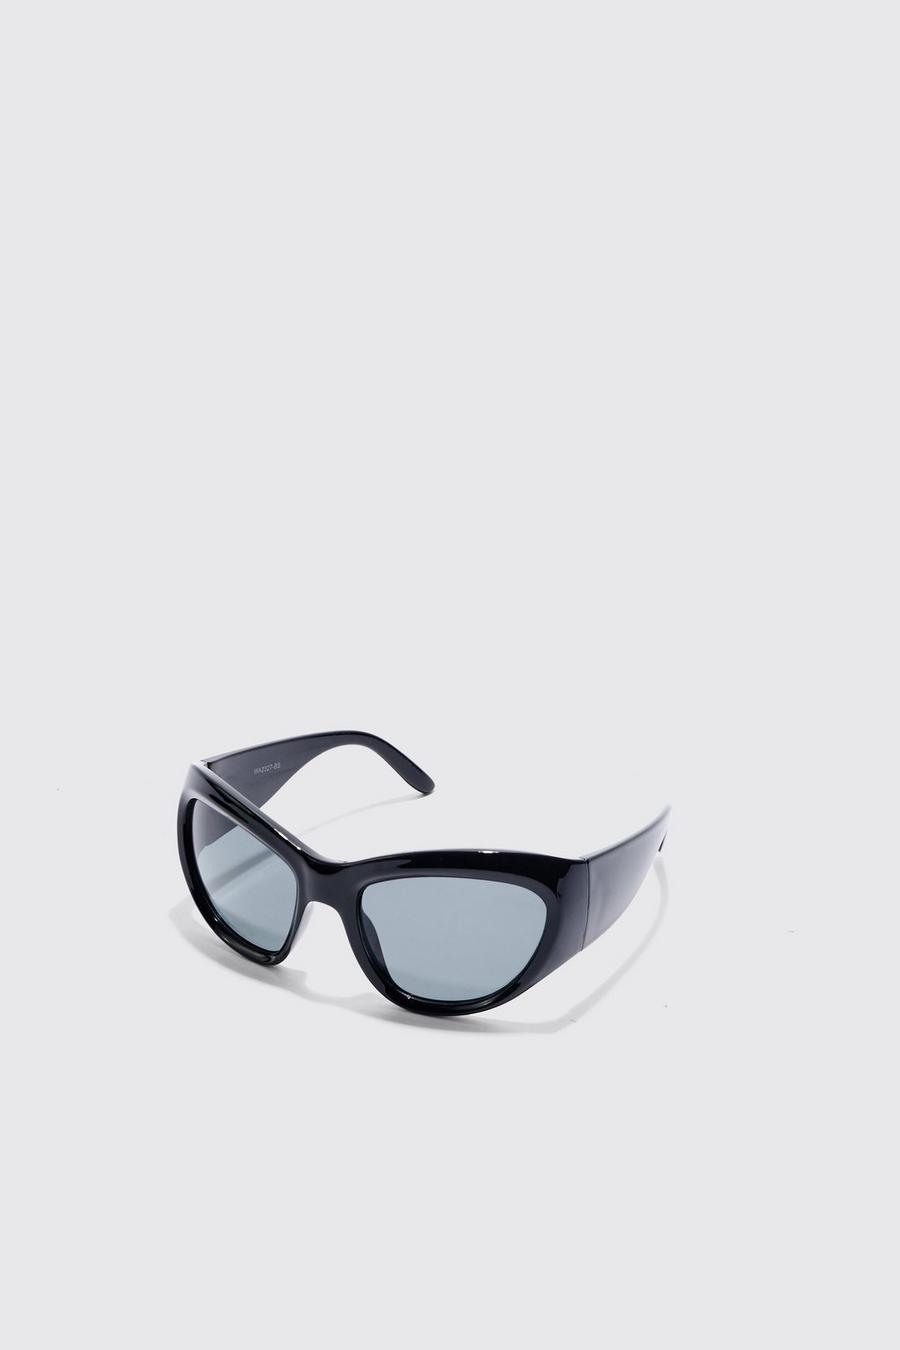 Gafas de sol con montura metálica y lentes protectoras, Black